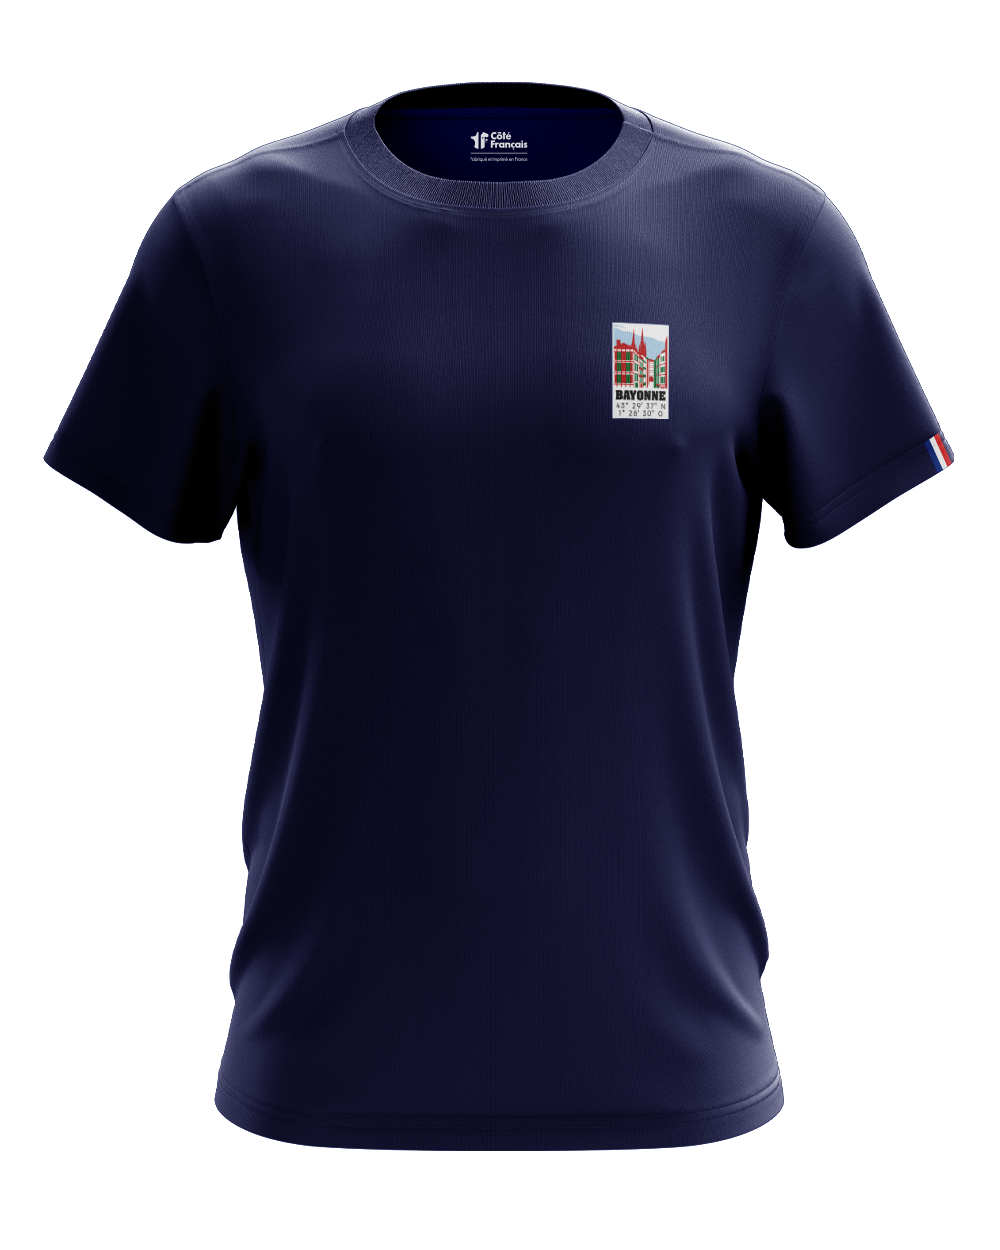 T-shirt "Ville de Bayonne" - bleu marine